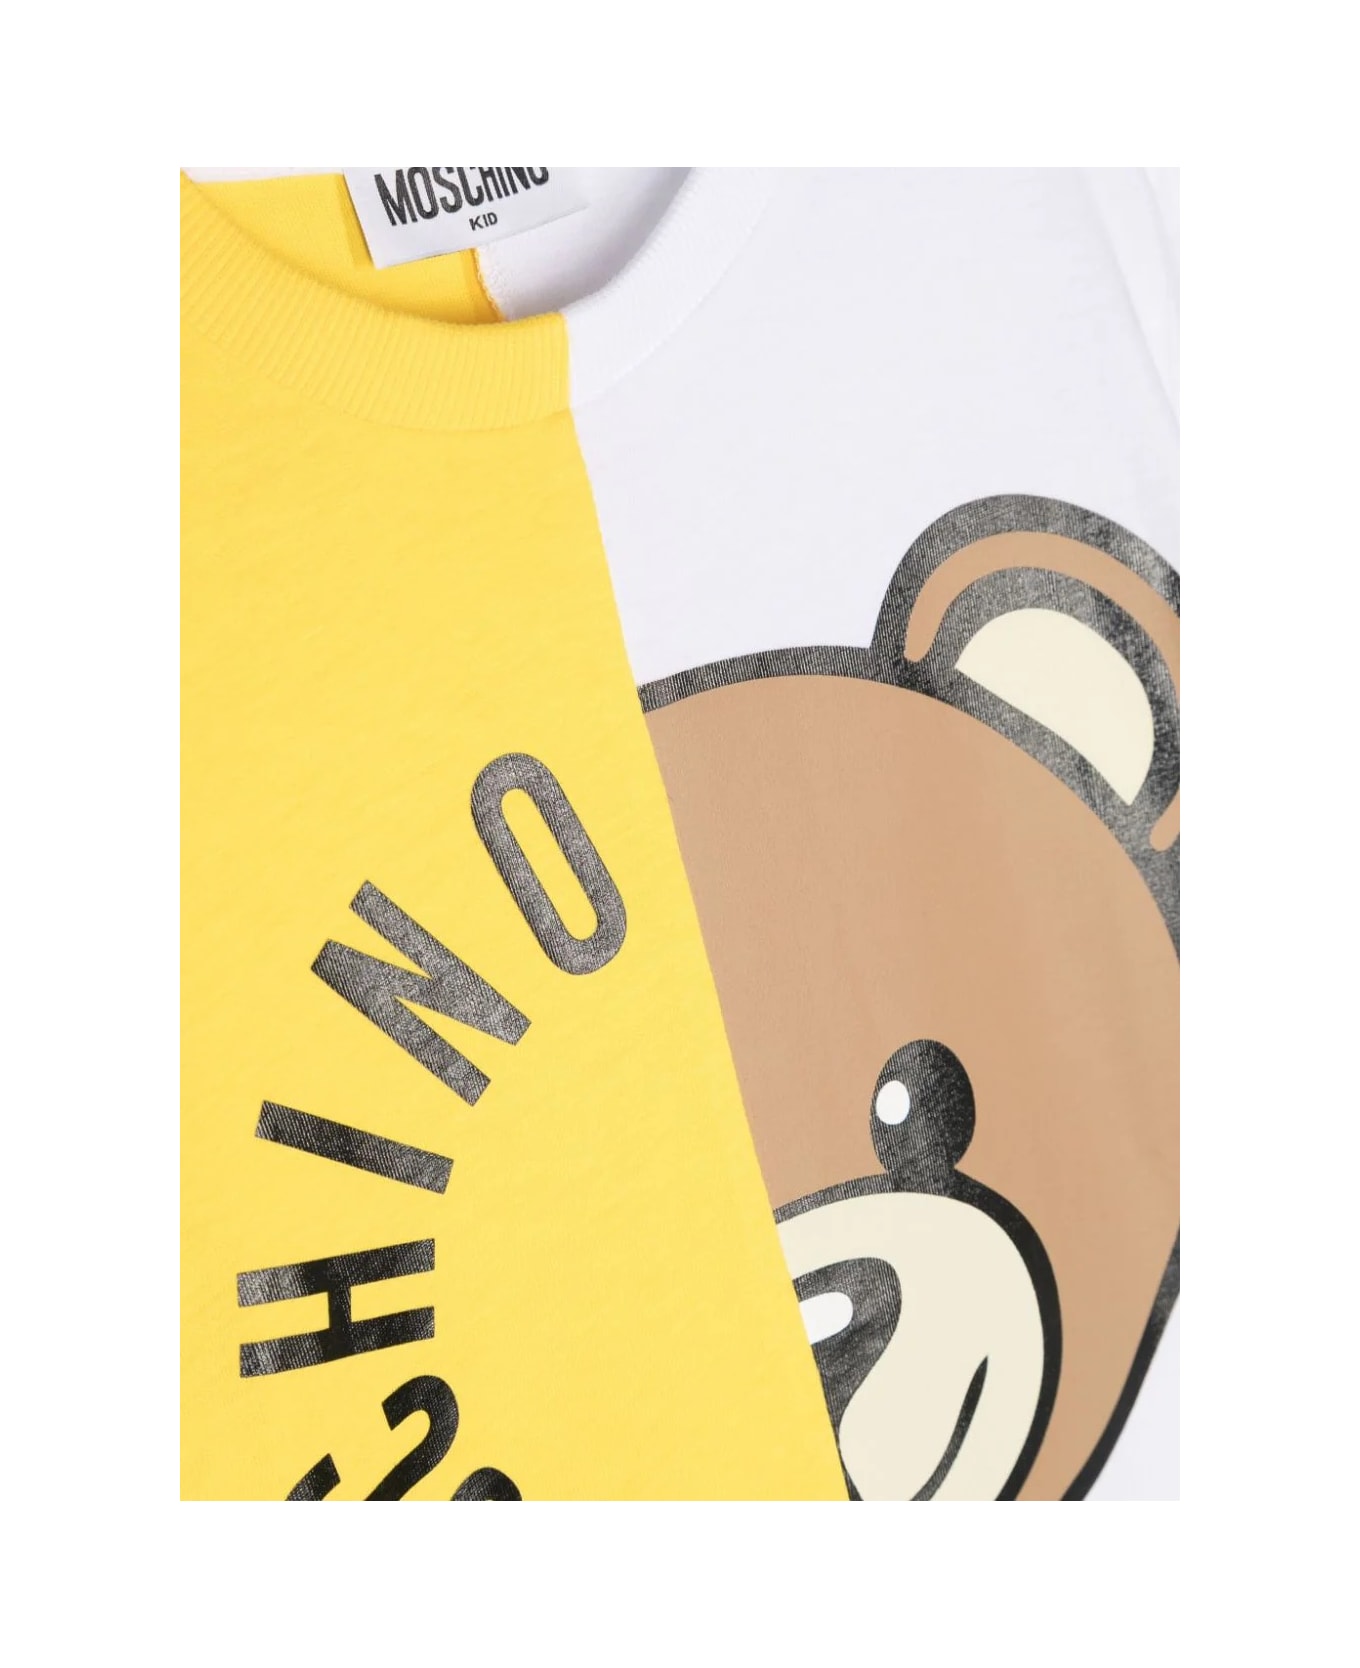 Moschino White And Yellow T-shirt With Moschino Teddy Bear Circular Print - WHITE/YELLOW